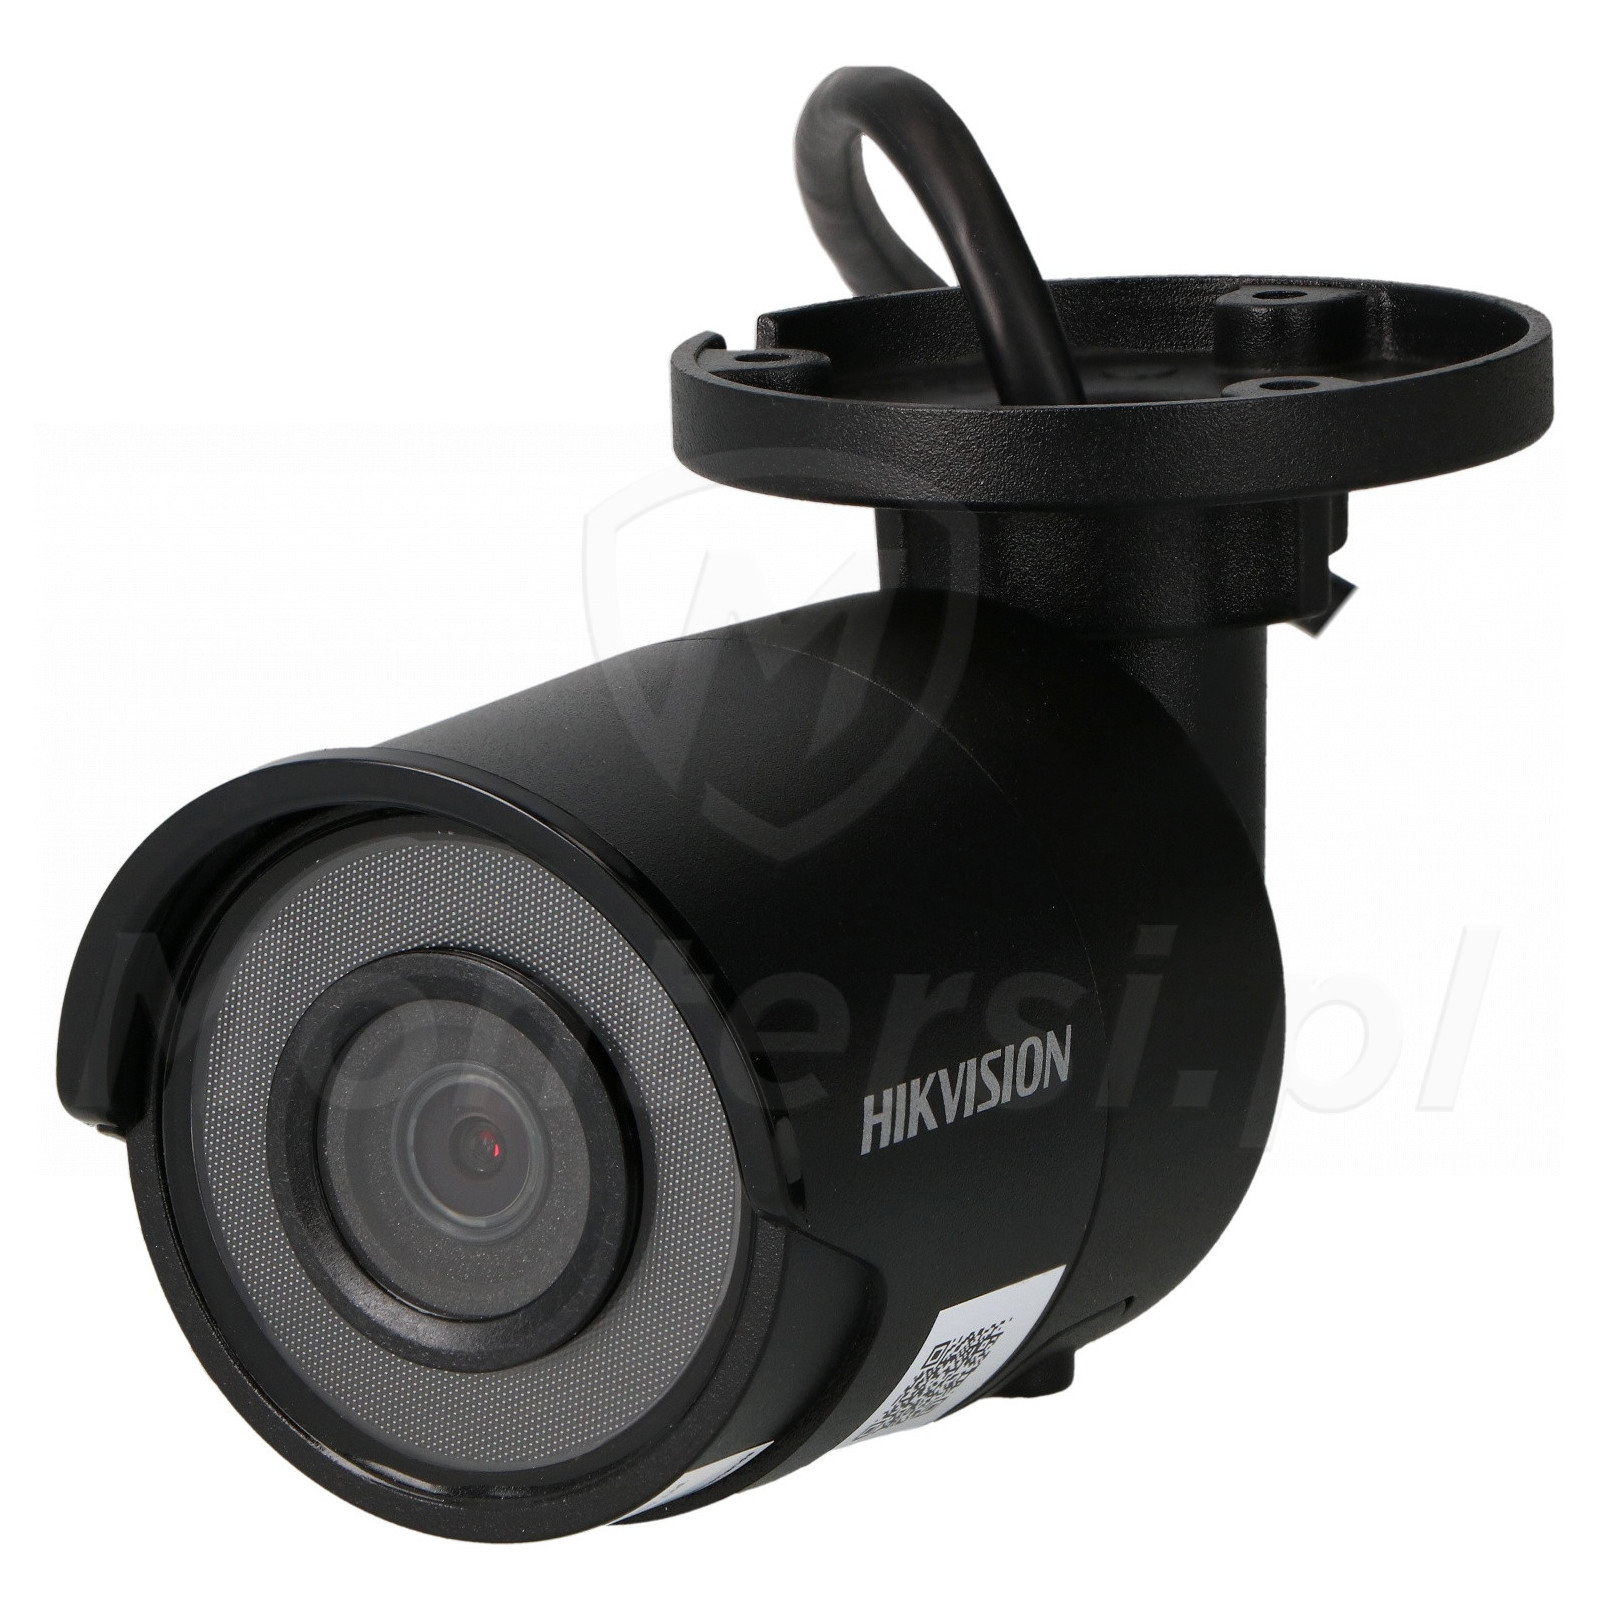 Tubowa kamera IP DS-2CD2043G0-I(BLACK)